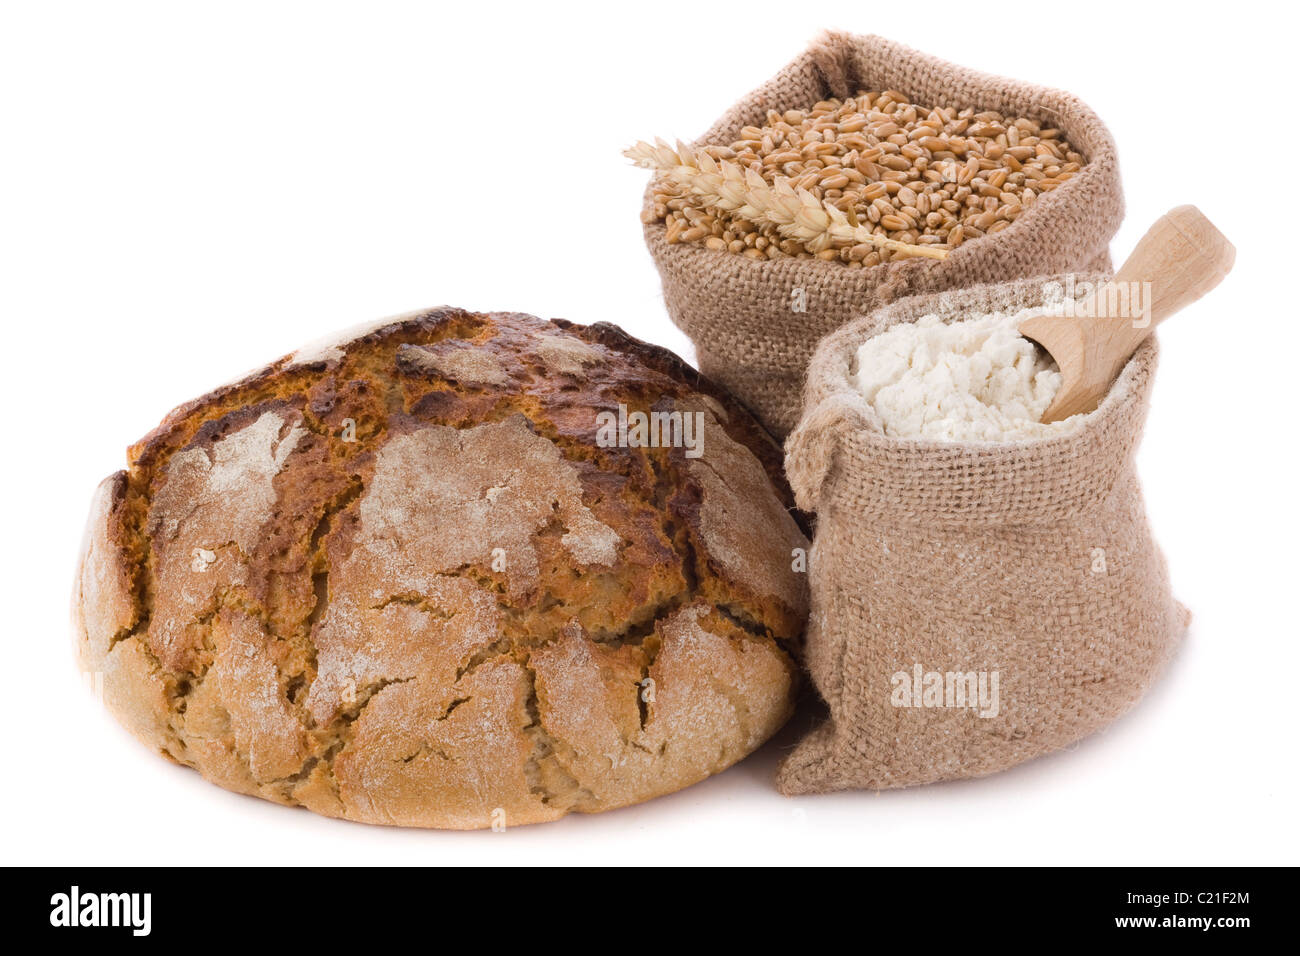 Du pain frais, des céréales et de la farine de blé dans de petits sacs de jute Banque D'Images